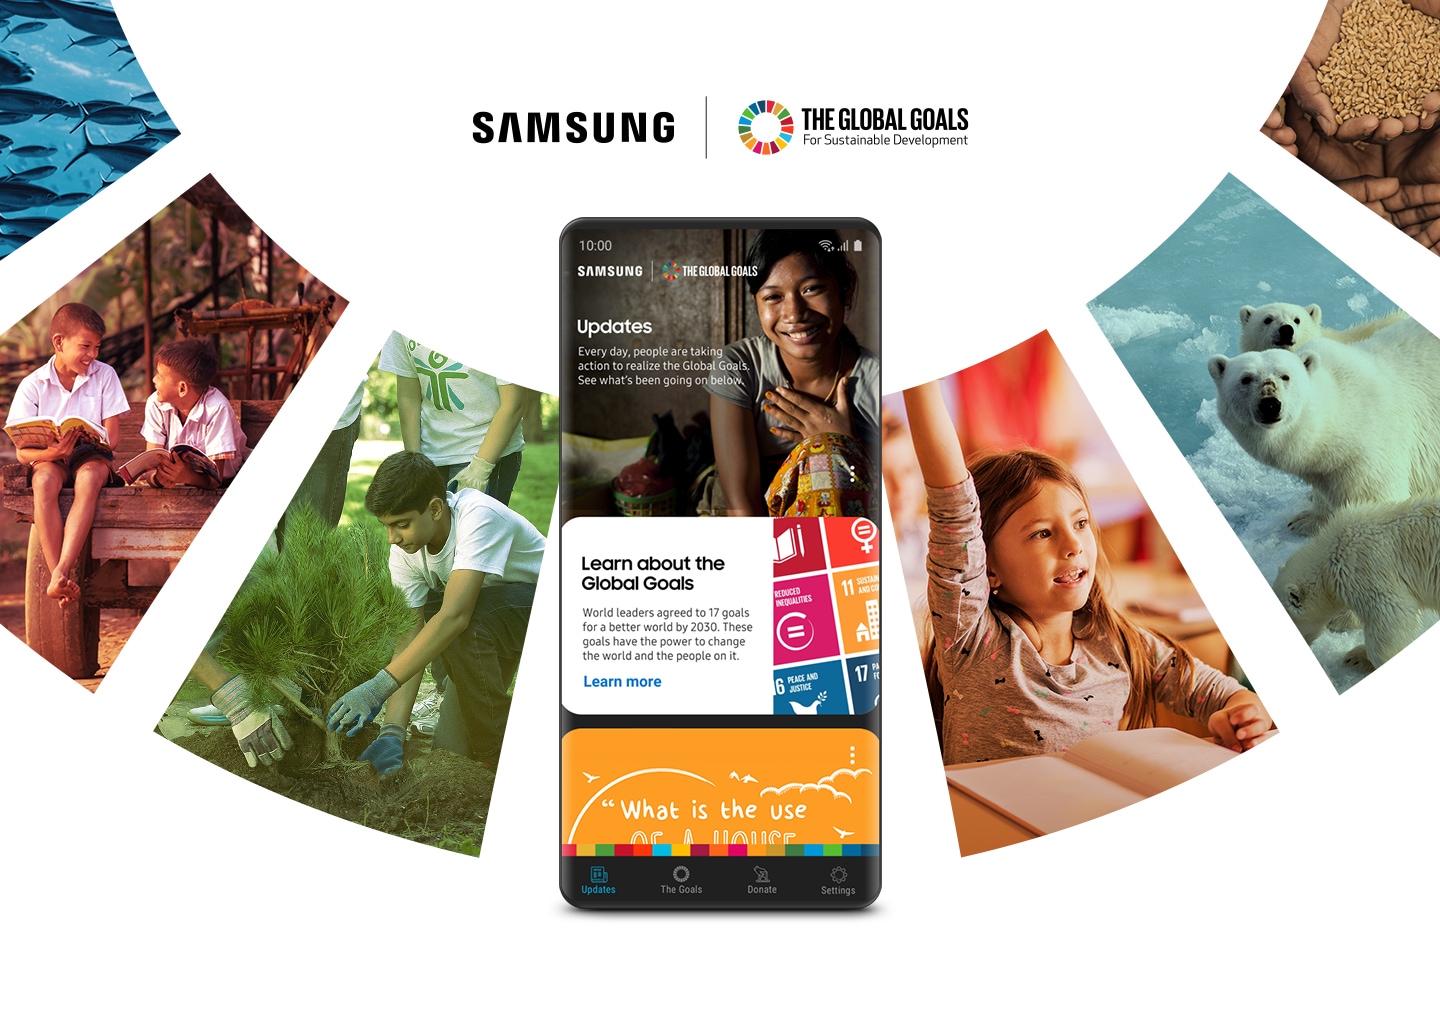 삼성 글로벌 골스 앱이 실행 중인 갤럭시 스마트폰 뒤로 유엔의 지속가능 개발 목표를 상징하는 이미지들이 원형 콜라주 형태로 보여집니다. 삼성은 모두를 위해 더 밝은 미래를 만들고자 유엔과 협력하기로 했습니다.